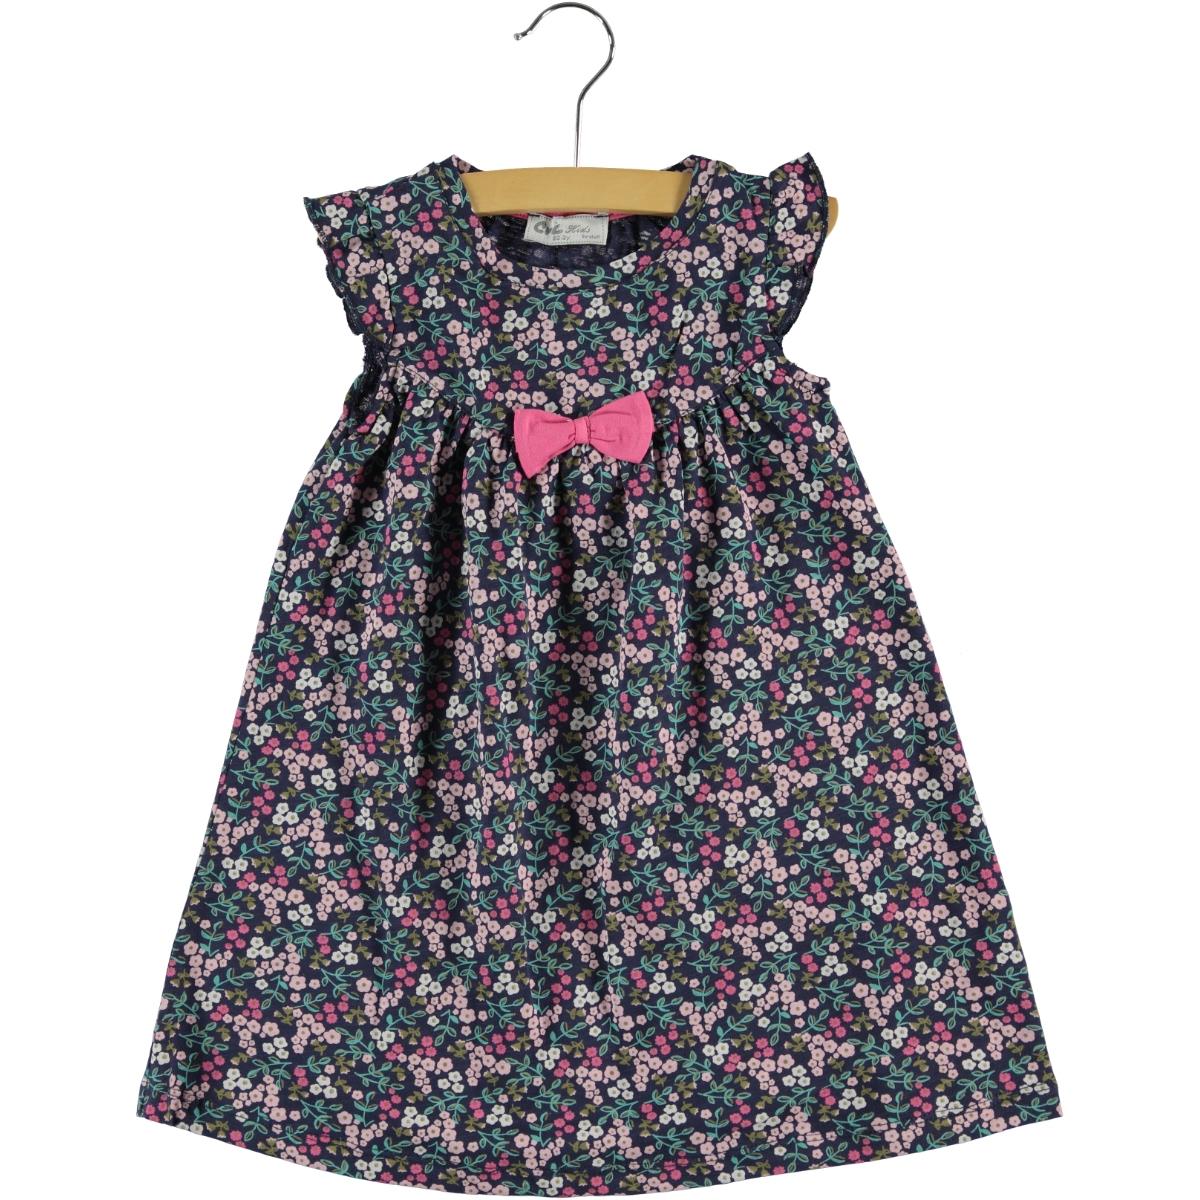 Cvl Kız Çocuk Elbise 25 Yaş Lacivert Fiyatı 9495 / LCI